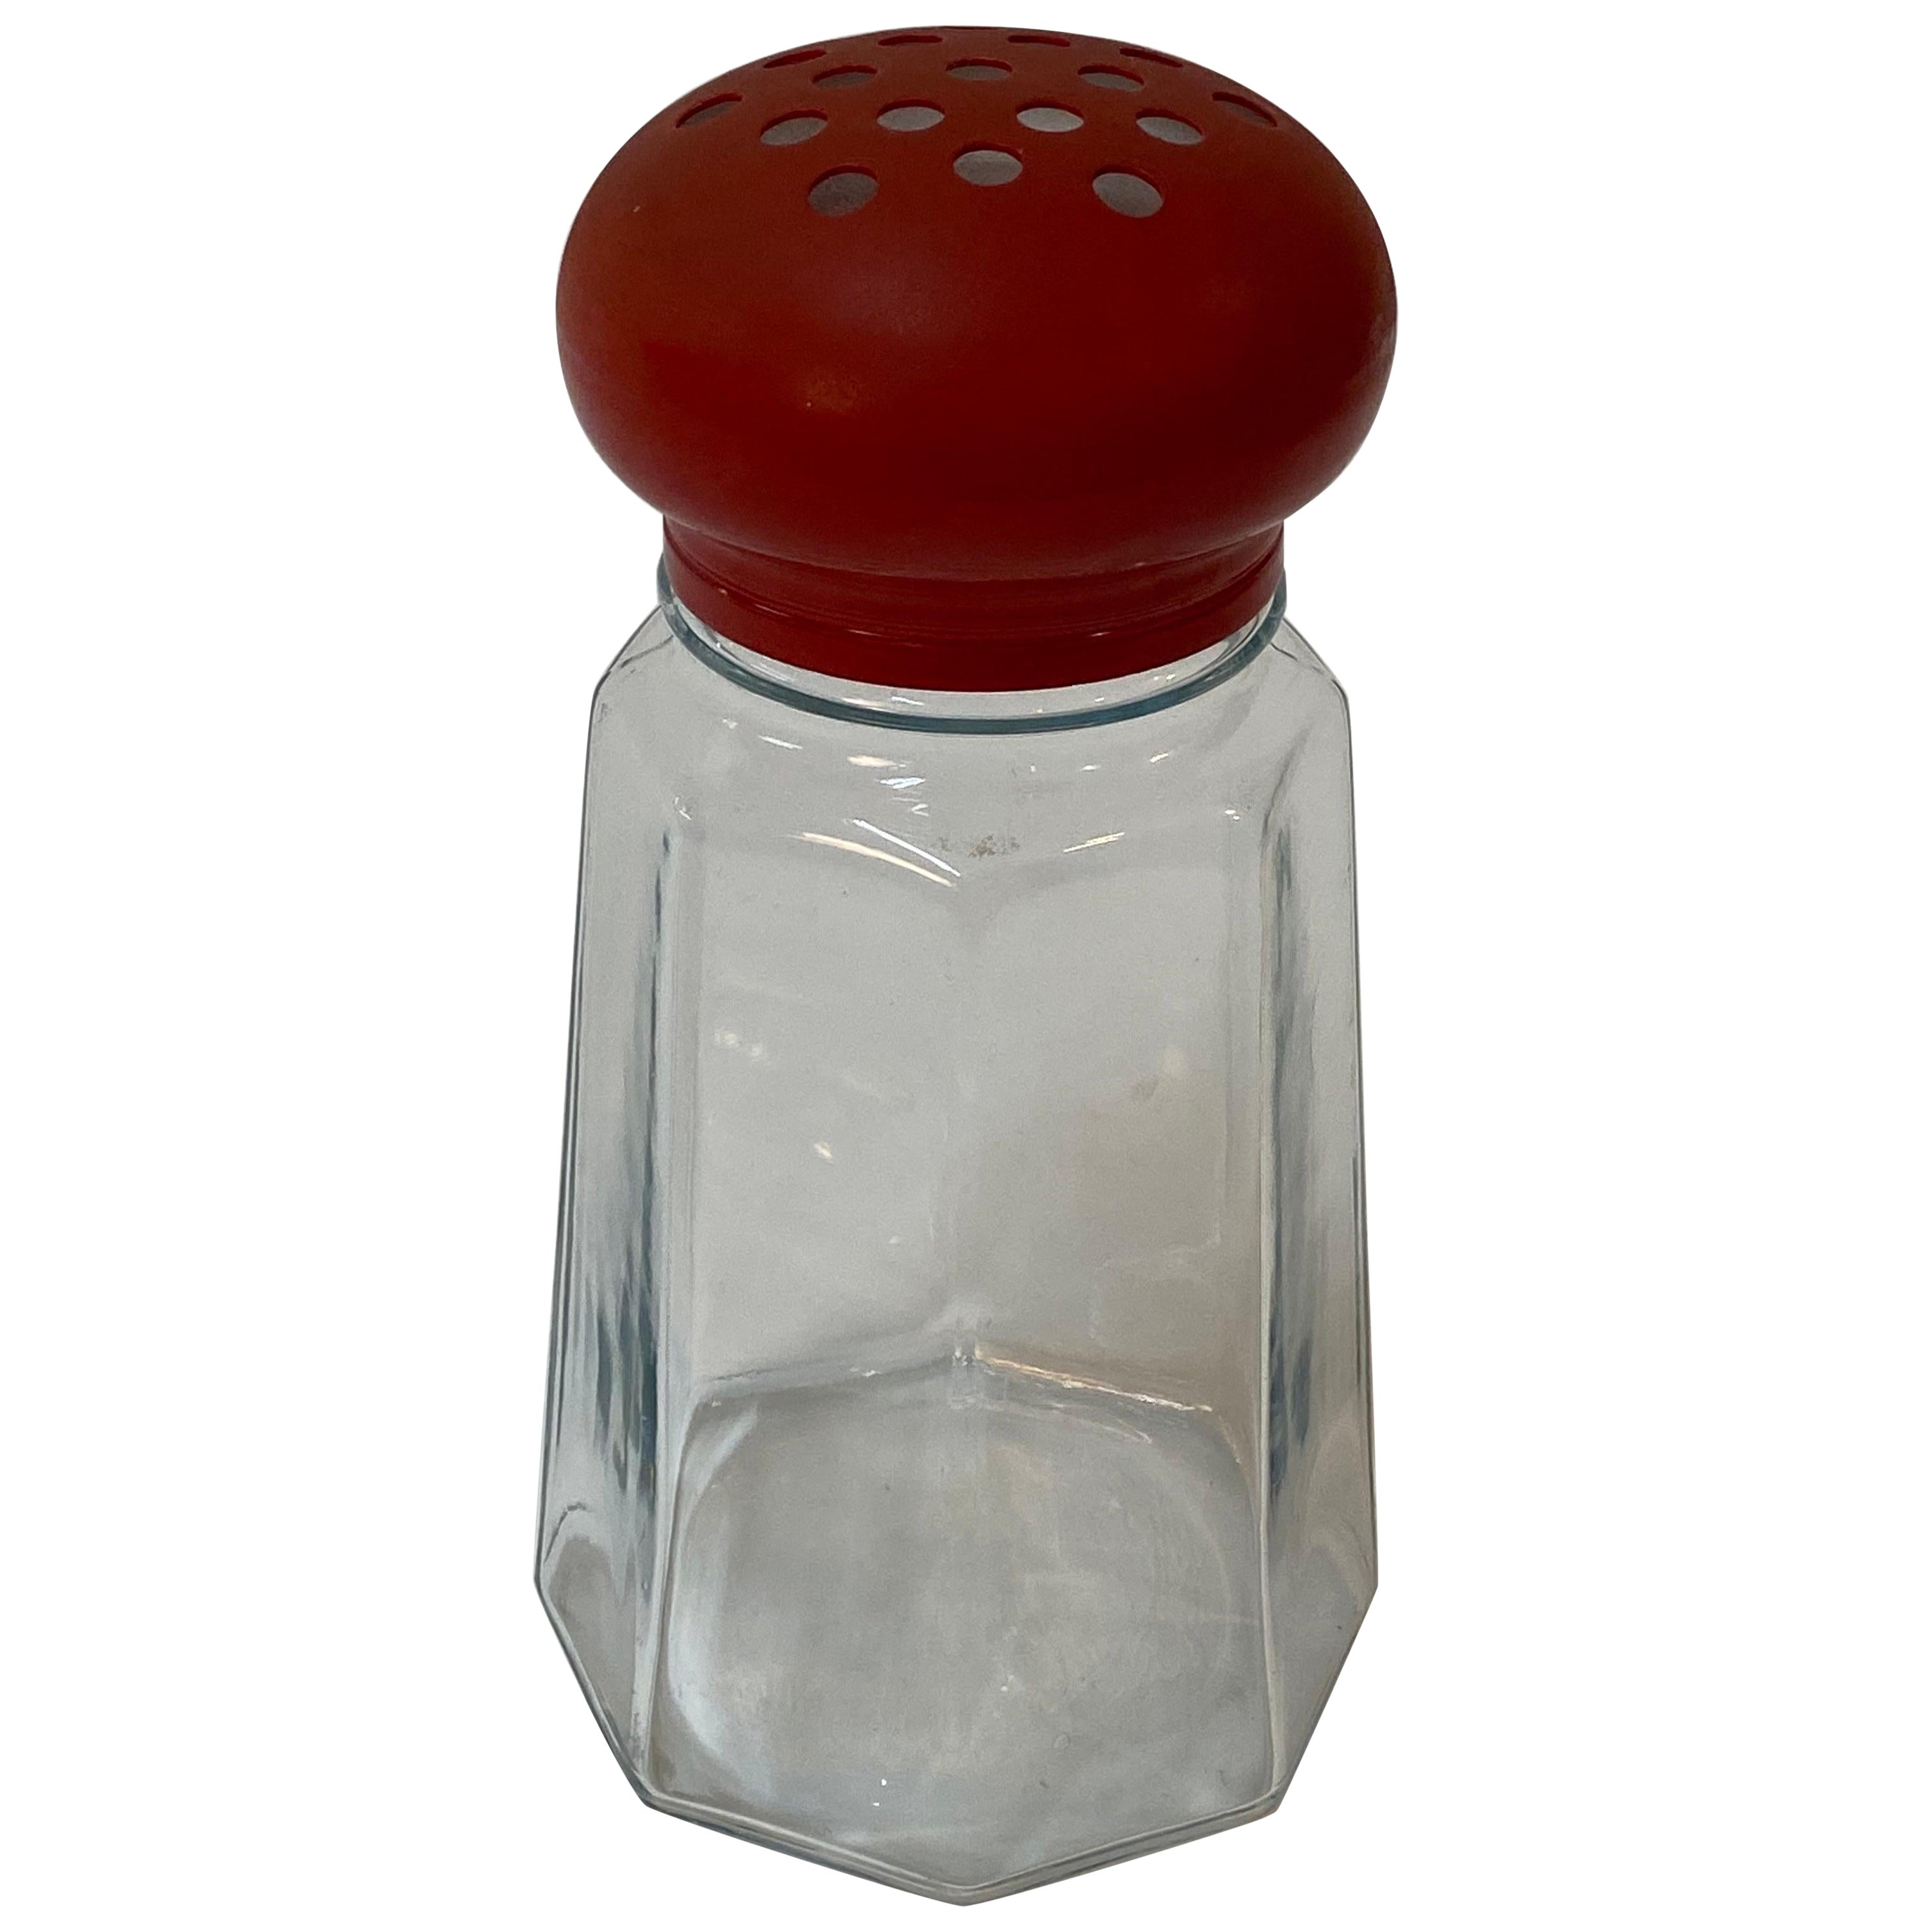 Think Big Post Modern Over Sized Salt Shaker For Sale